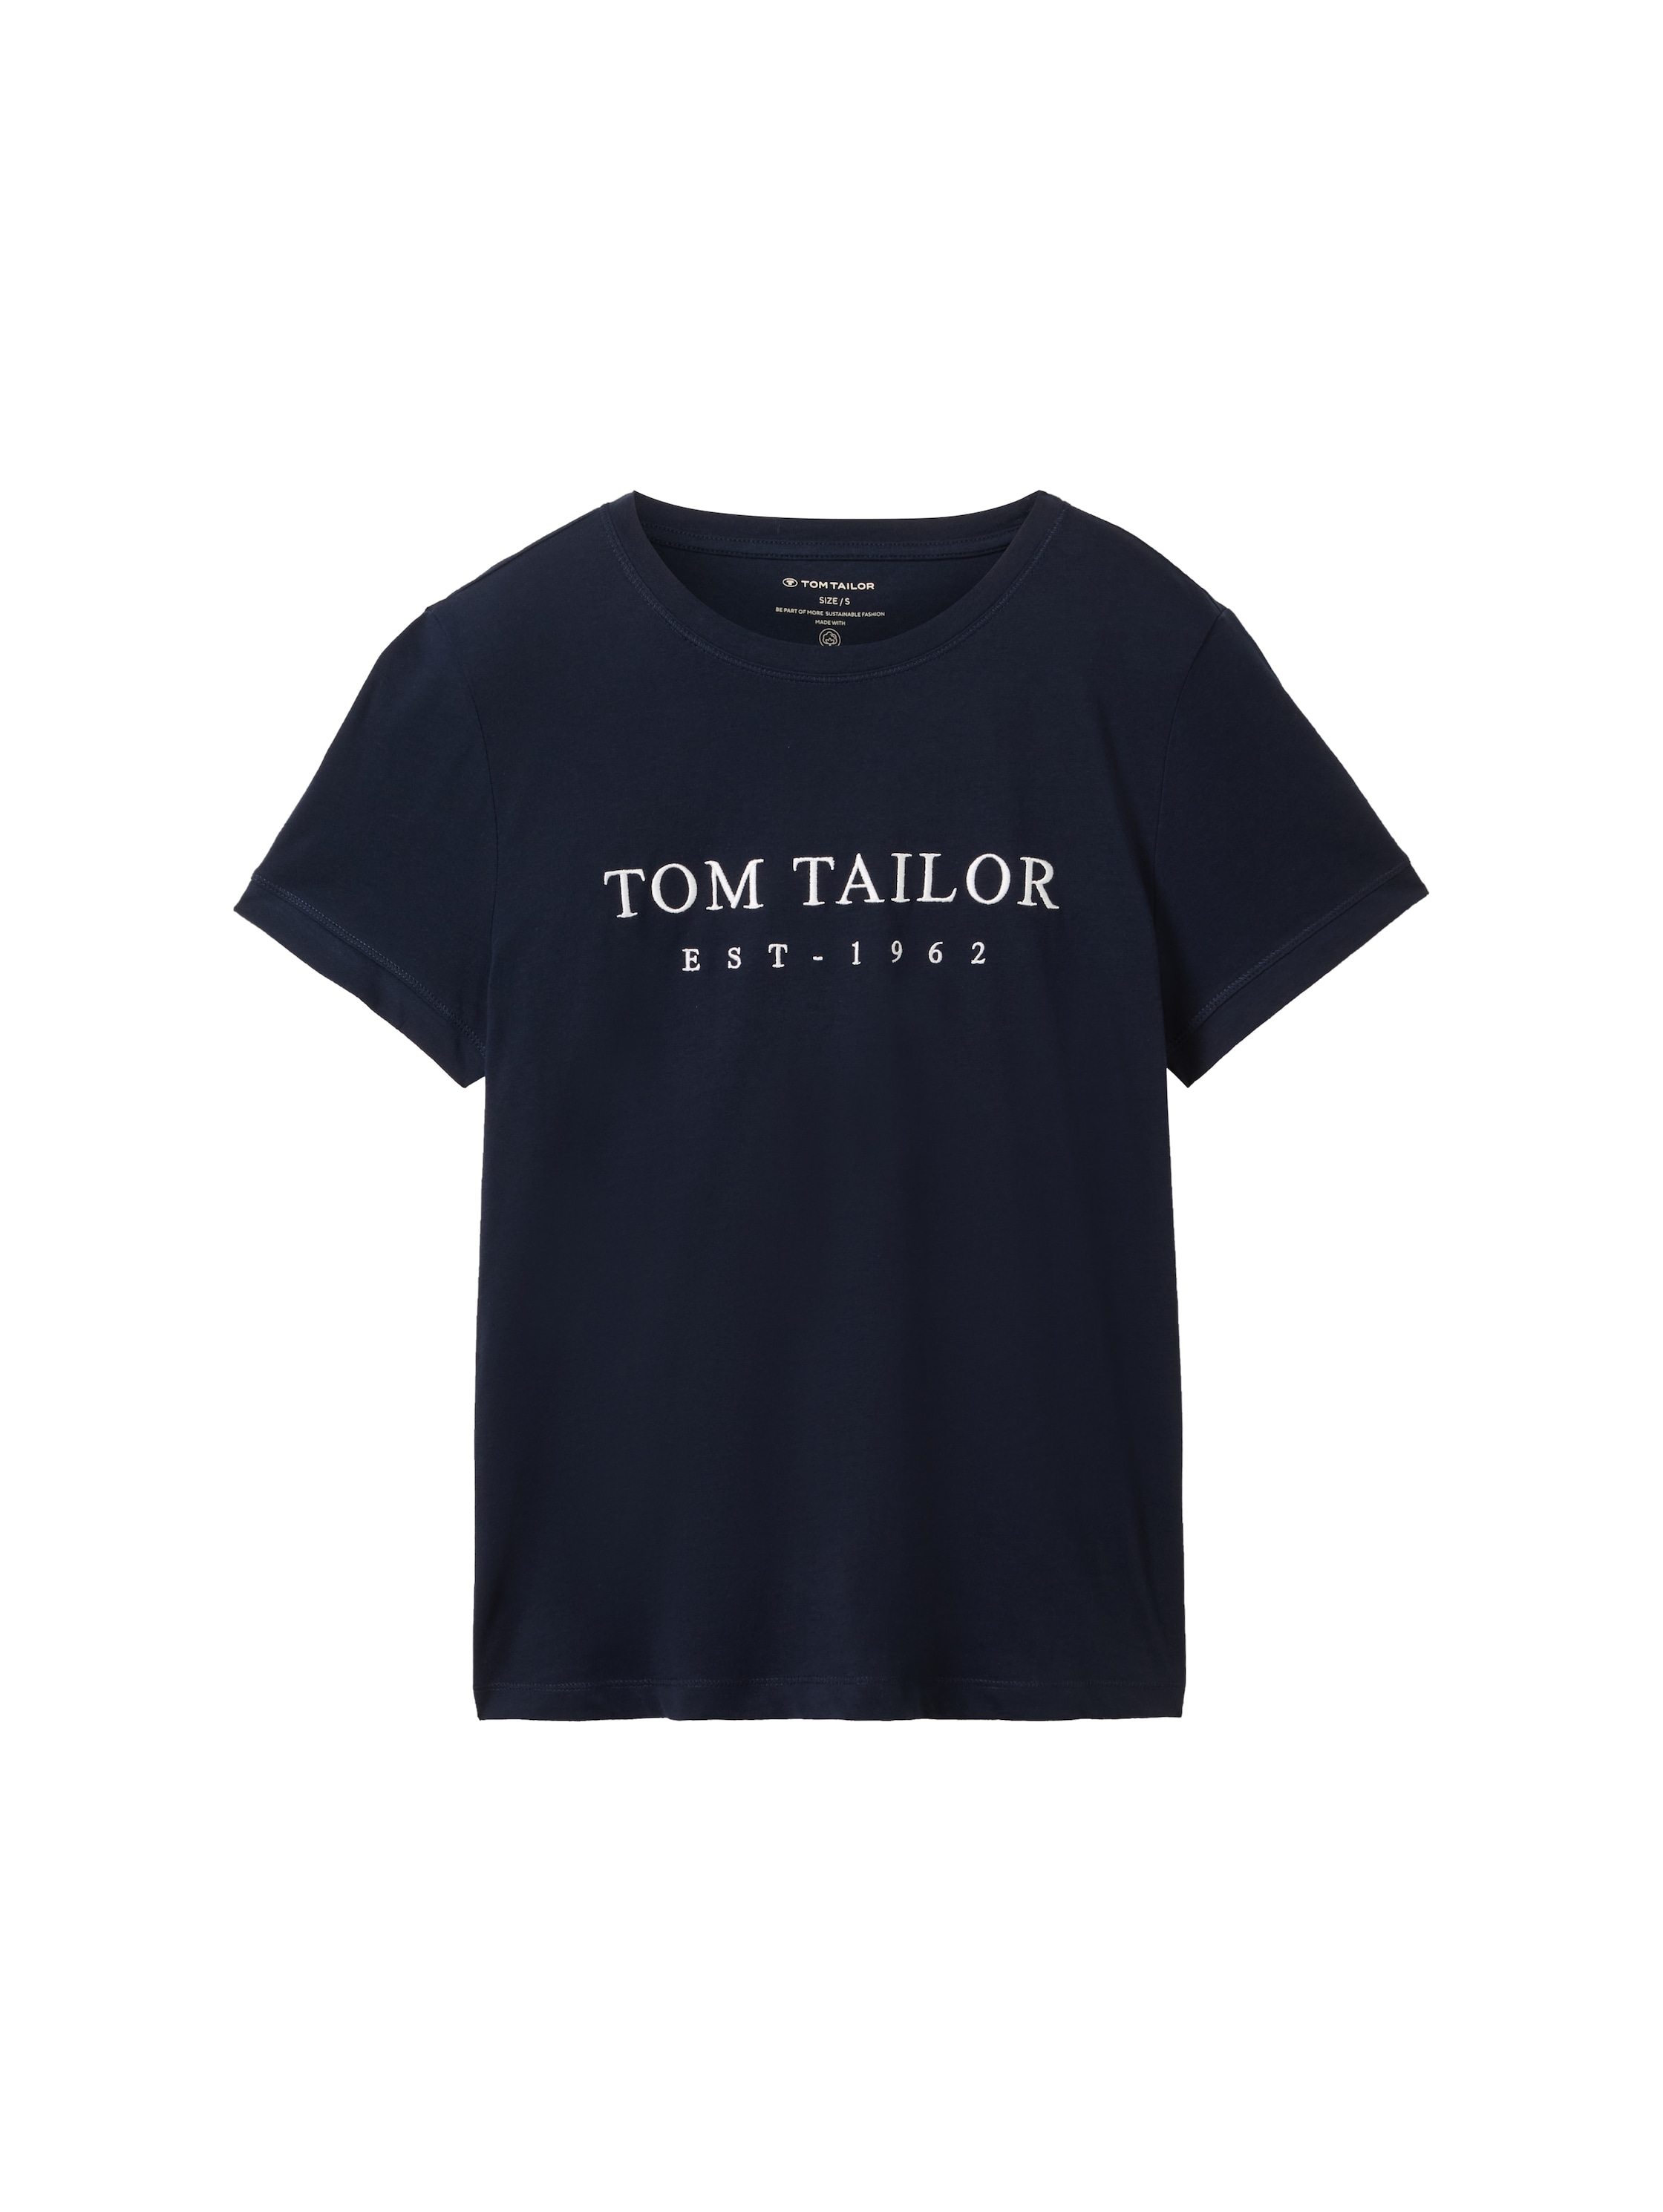 TOM TAILOR Print-Shirt, mit Logo Stickerei